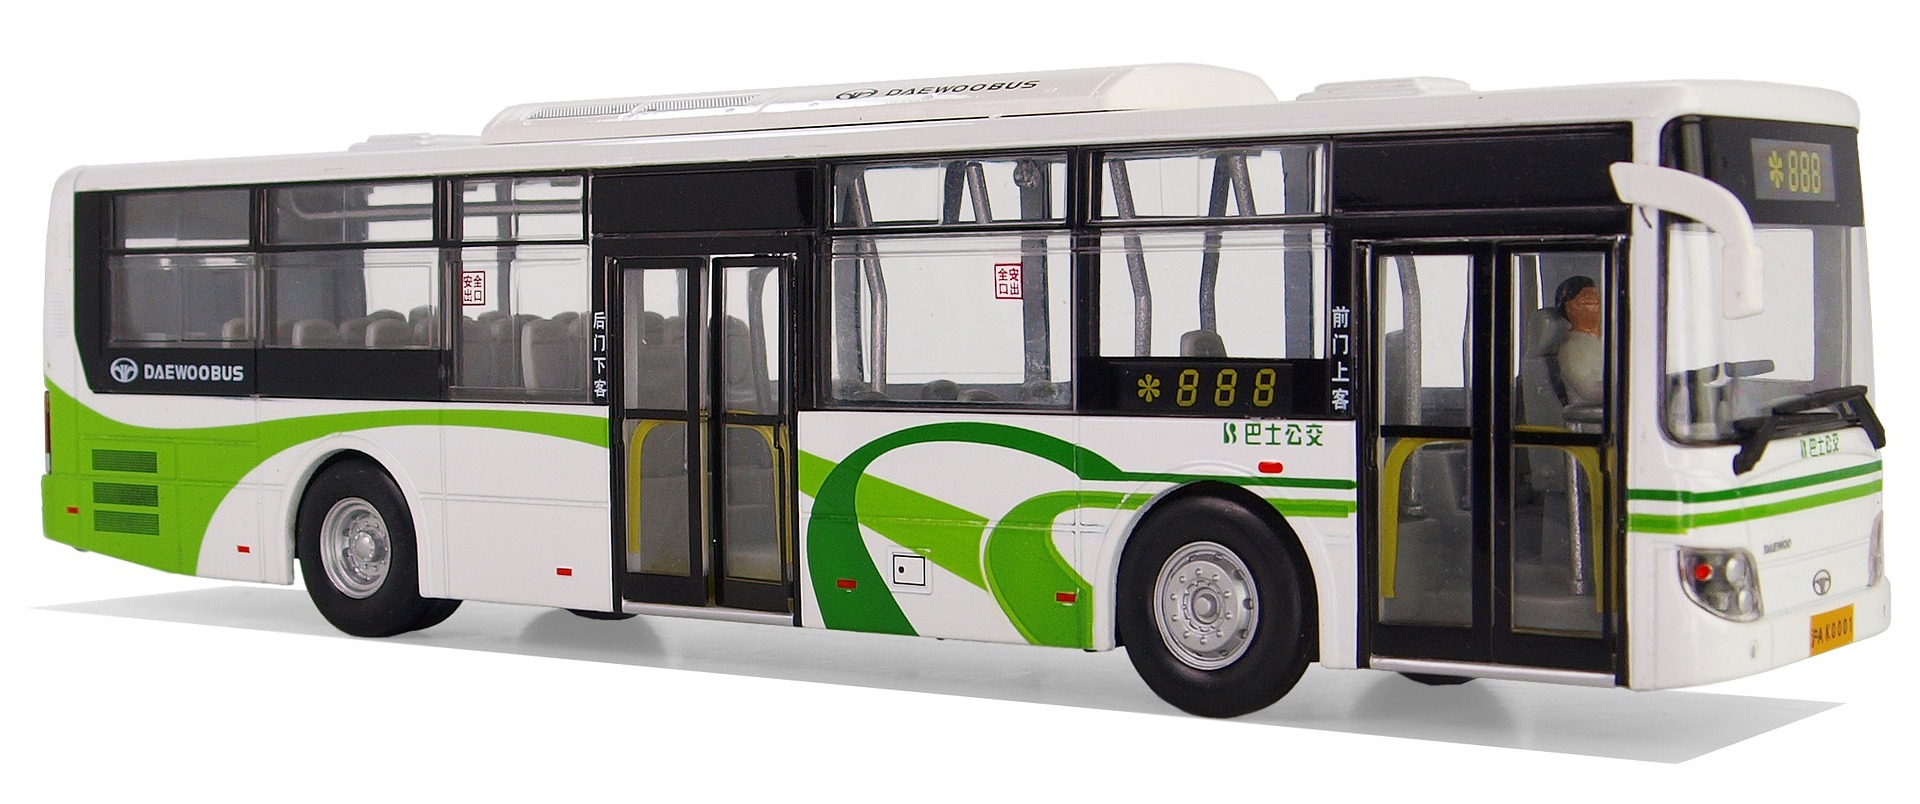   Сколько едет автобус  №800 из Сарысу до ТЦ ТерраСити в Ларе? 